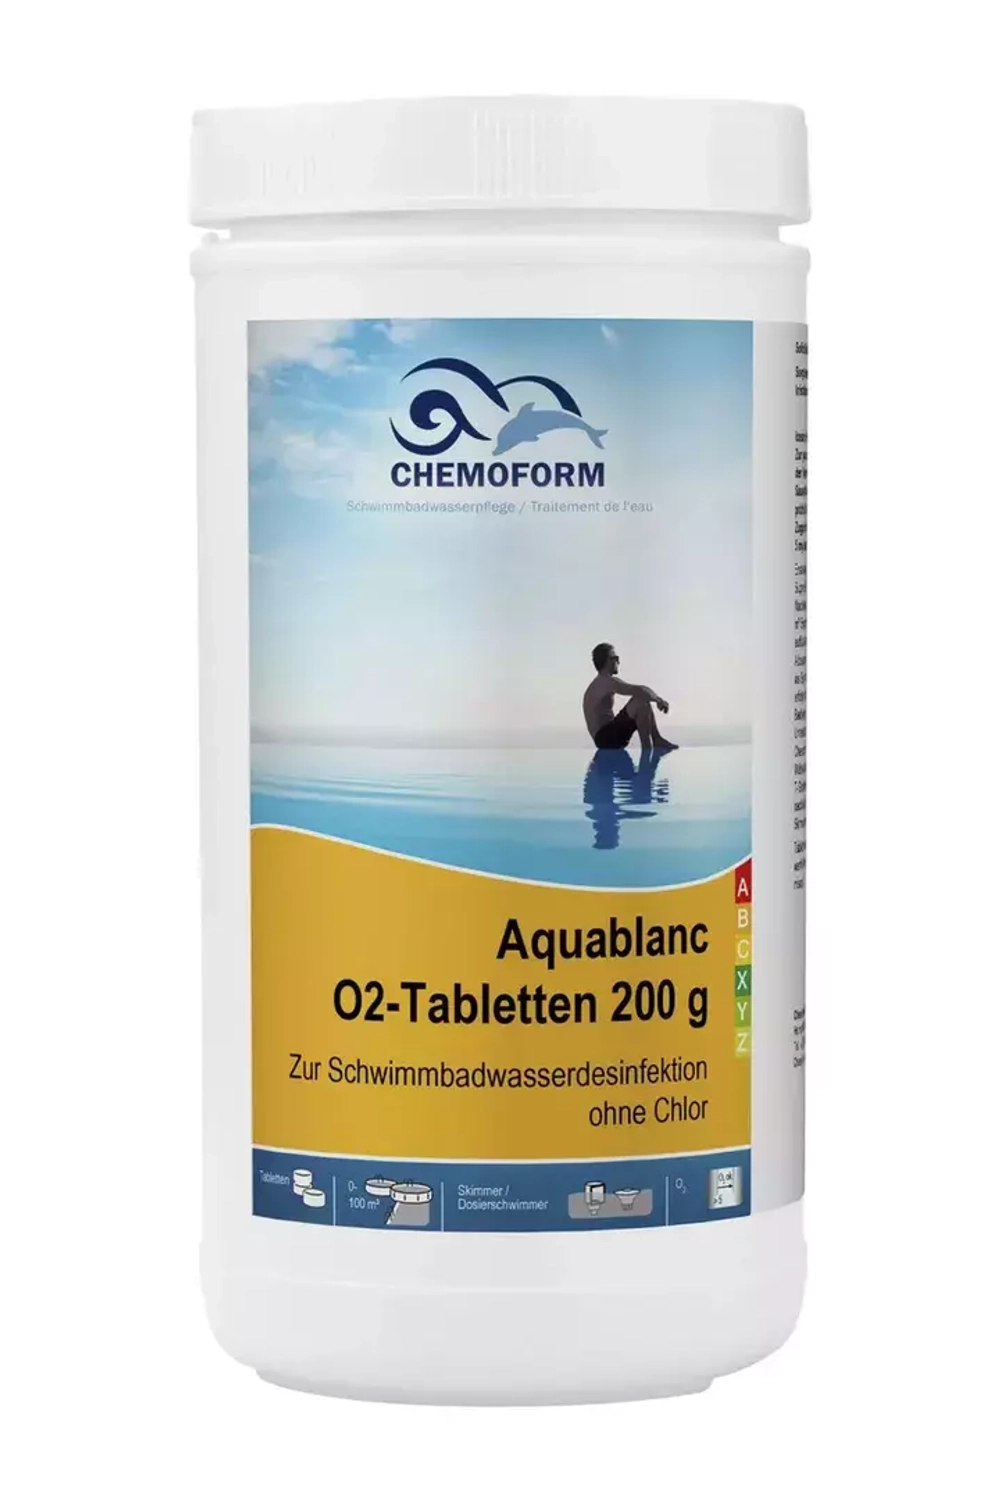 Аквабланк (активный кислород) О2 в таблетках 200гр, банка 1кг - 0592001 - Chemoform, Германия